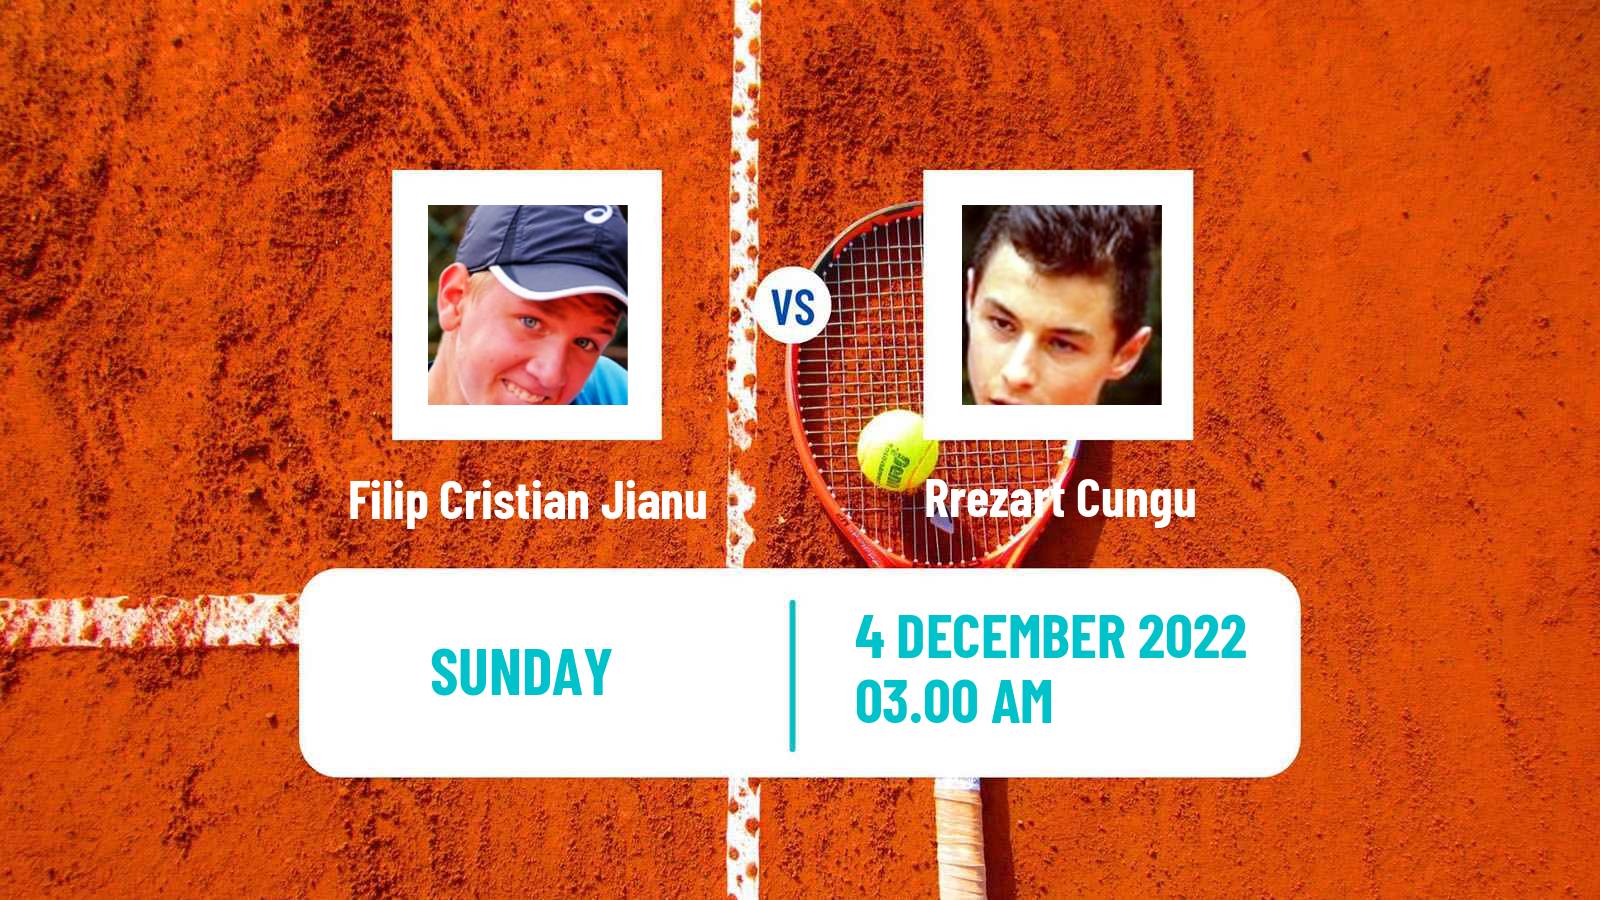 Tennis ITF Tournaments Filip Cristian Jianu - Rrezart Cungu